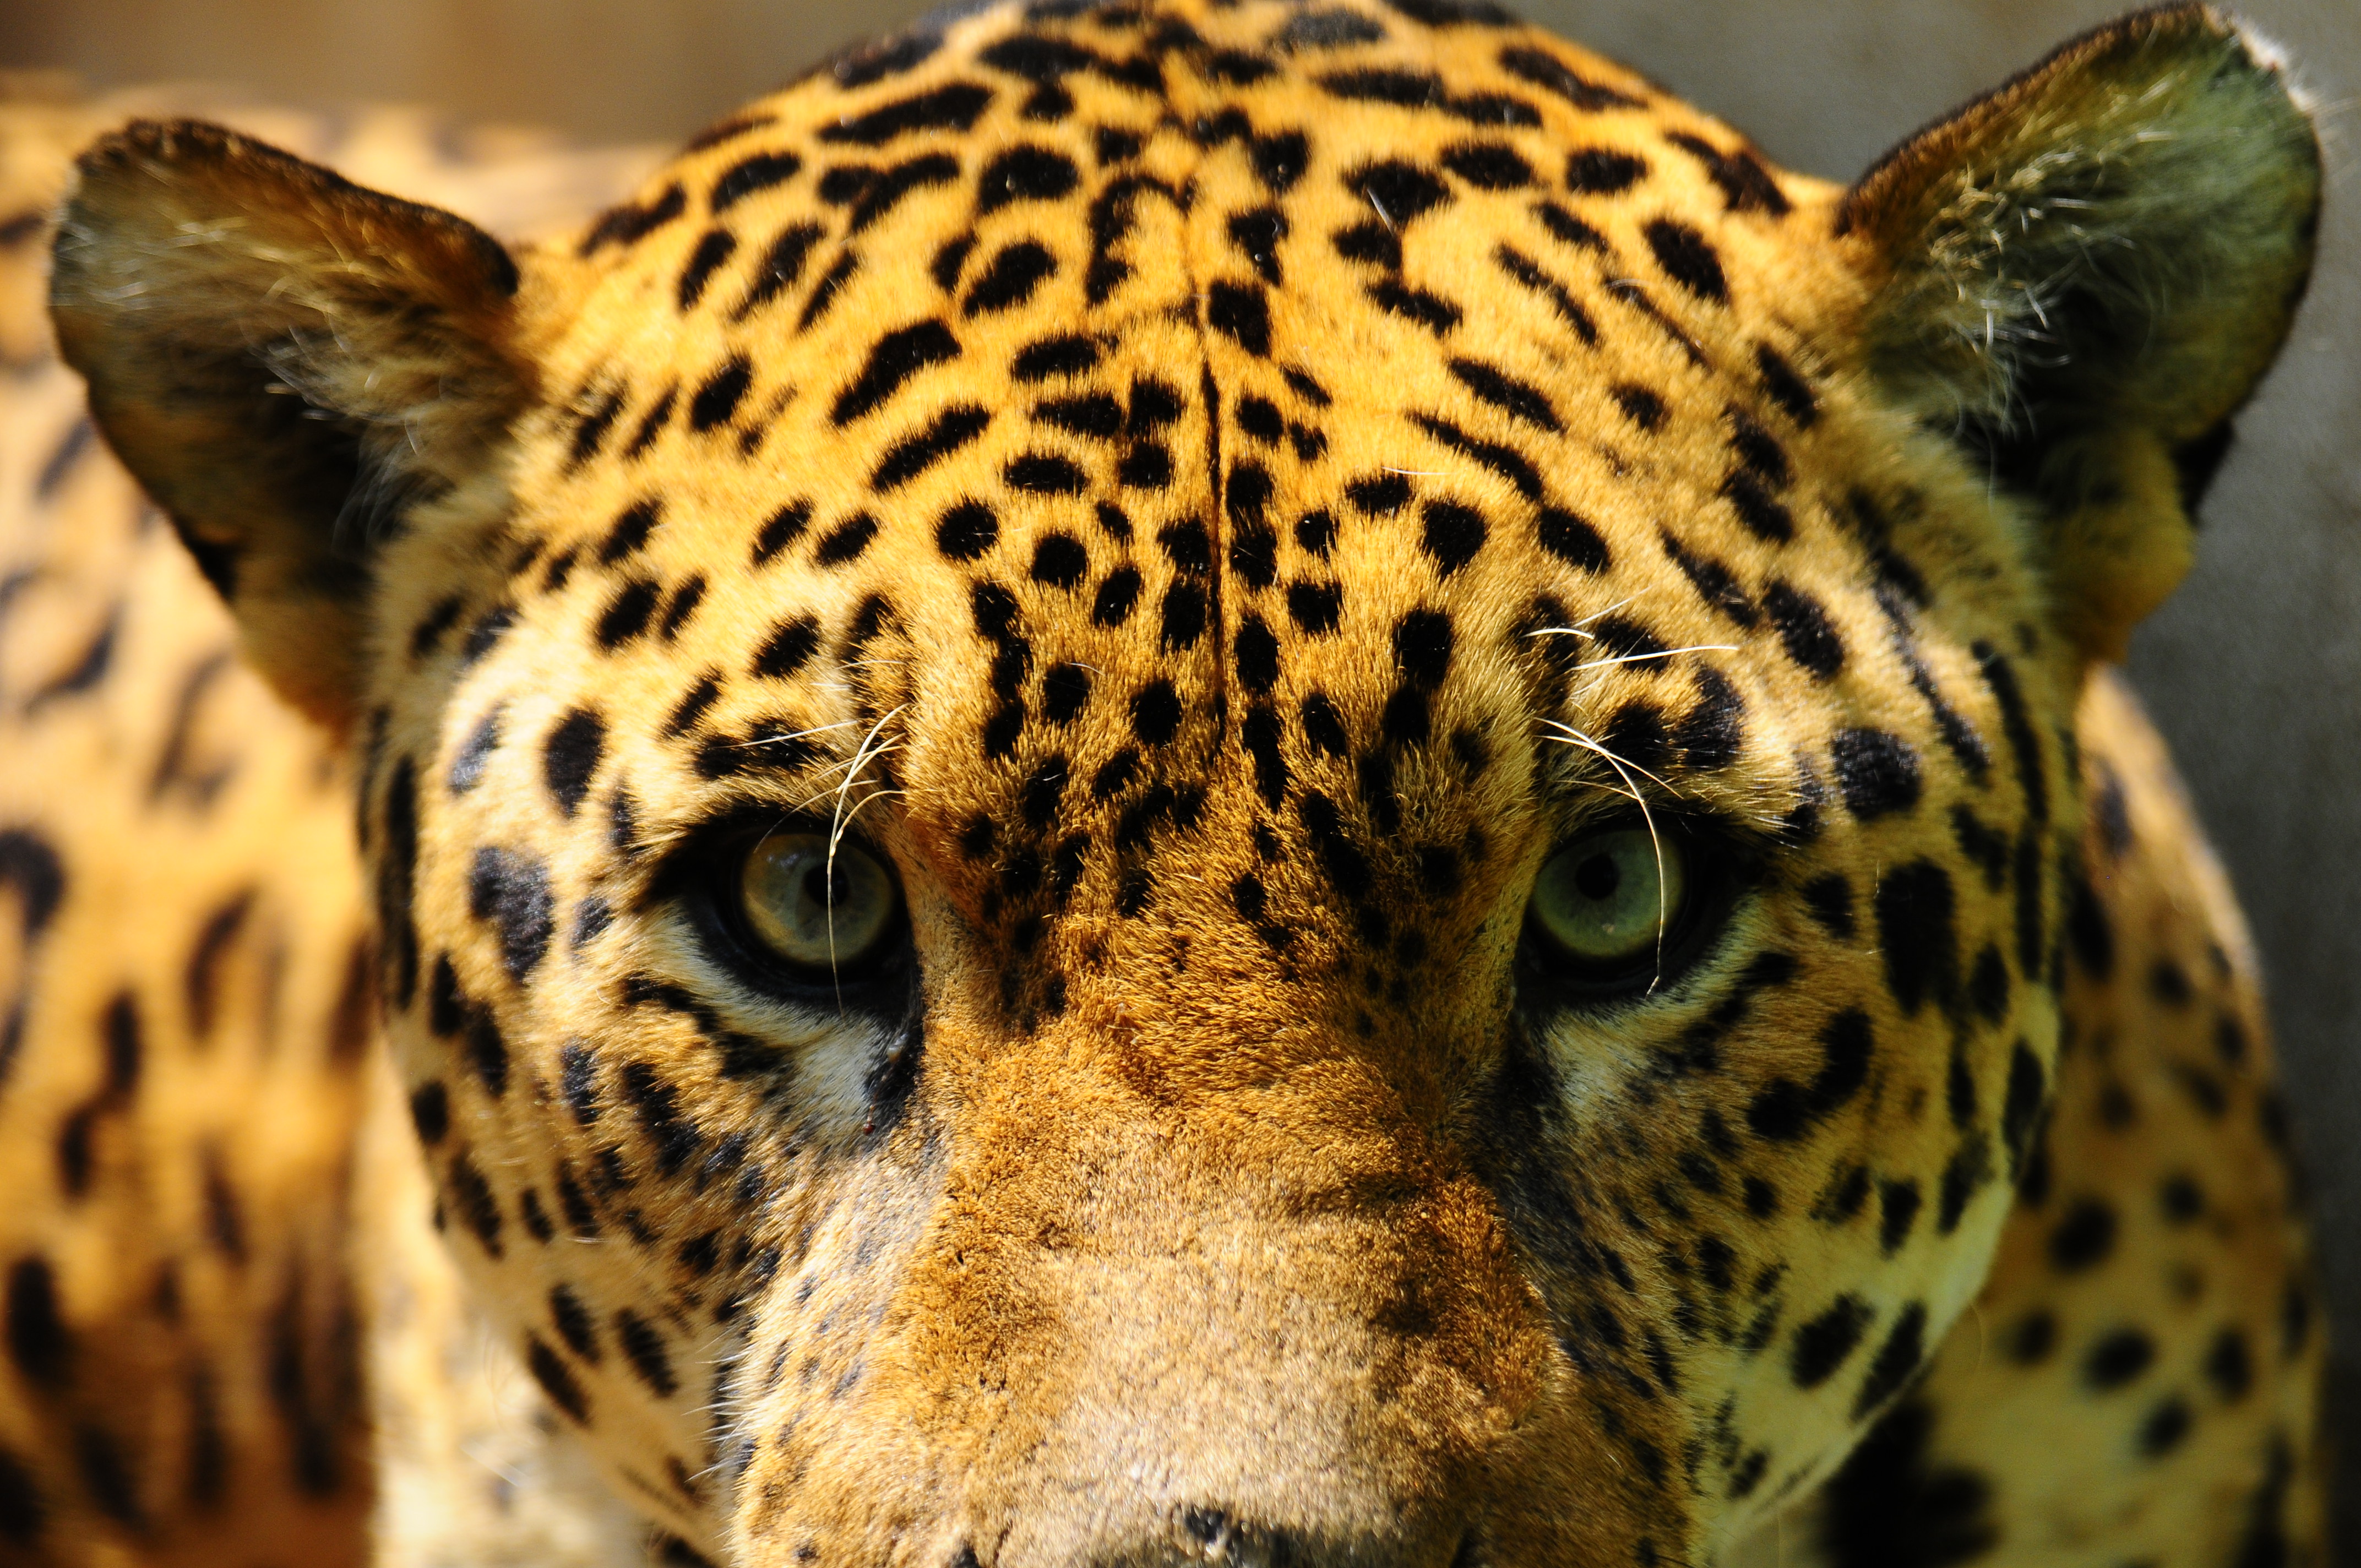 Apuntan a una mayor conciencia para lograr la conservación de esta especie. Foto: Fernando Allen / WWF Paraguay